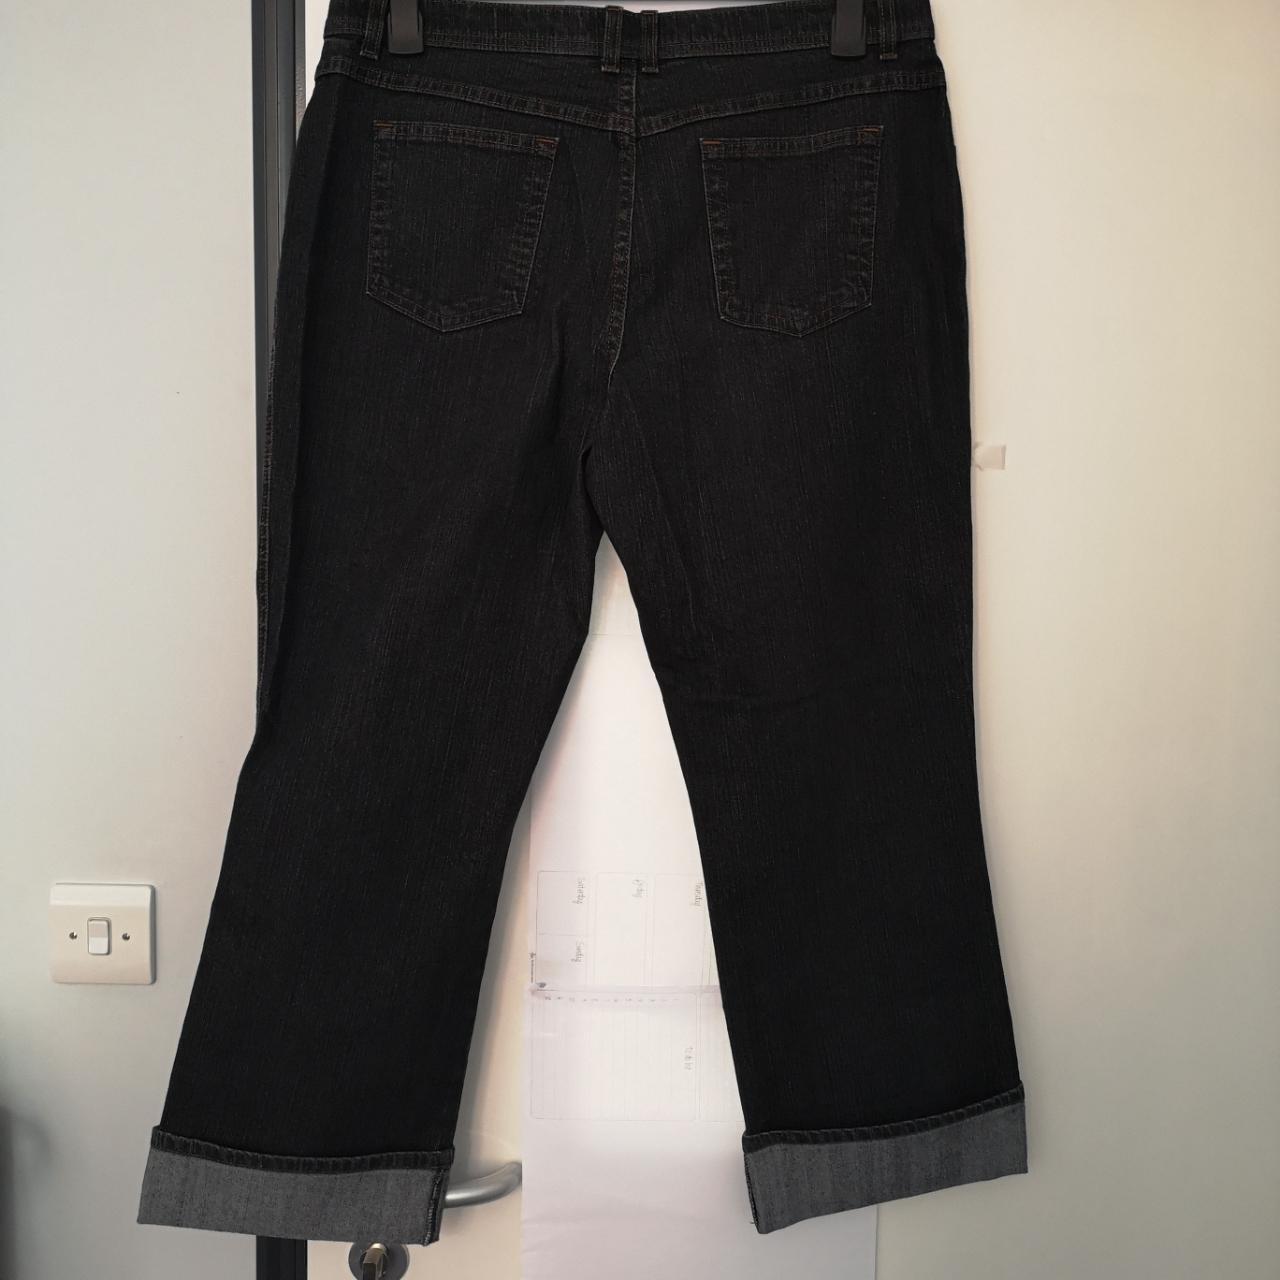 Dark Jeans, Marks & Spencer Size 18 - Depop